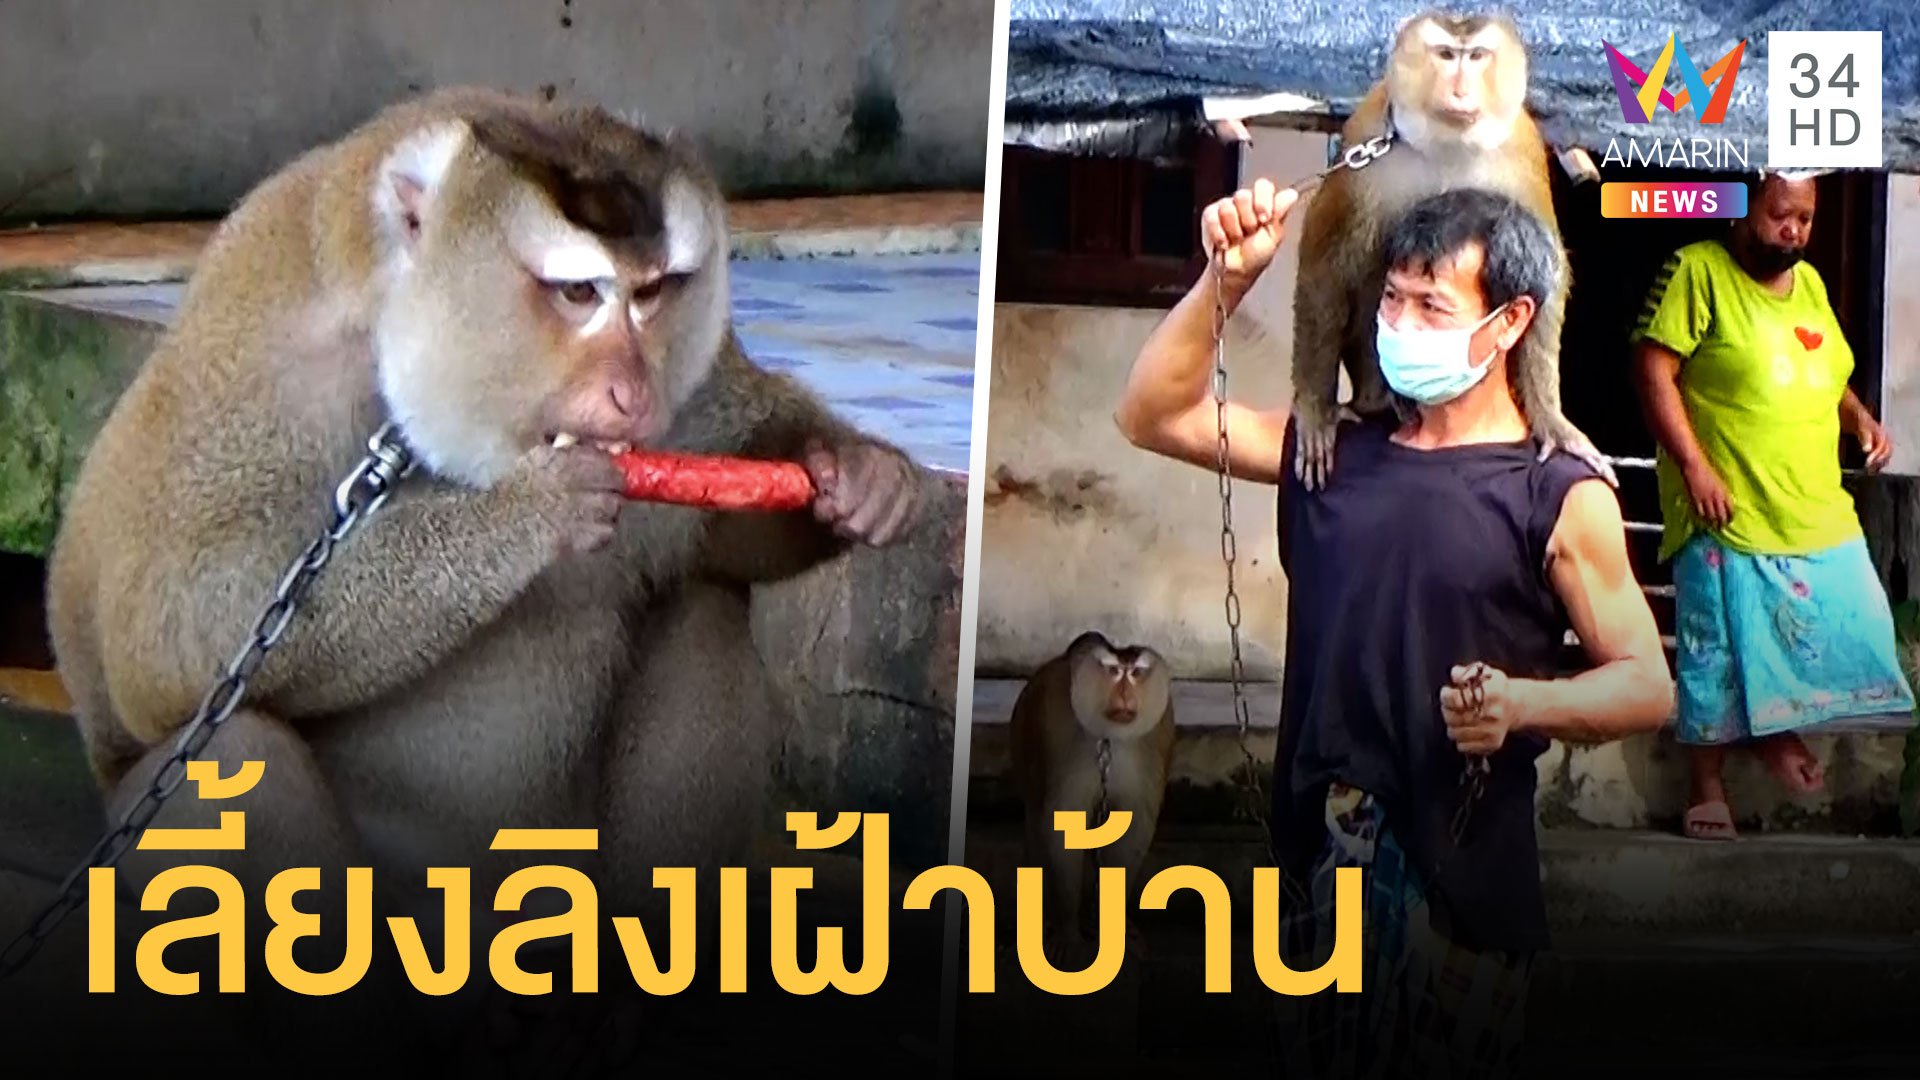 หนุ่มพม่าเลี้ยงลิงเก็บมะพร้าว ตกงาน 2 ปี กลัวเครียดเอามาเลี้ยงเฝ้าบ้าน | ข่าวอรุณอมรินทร์ | 23 ธ.ค. 64 | AMARIN TVHD34